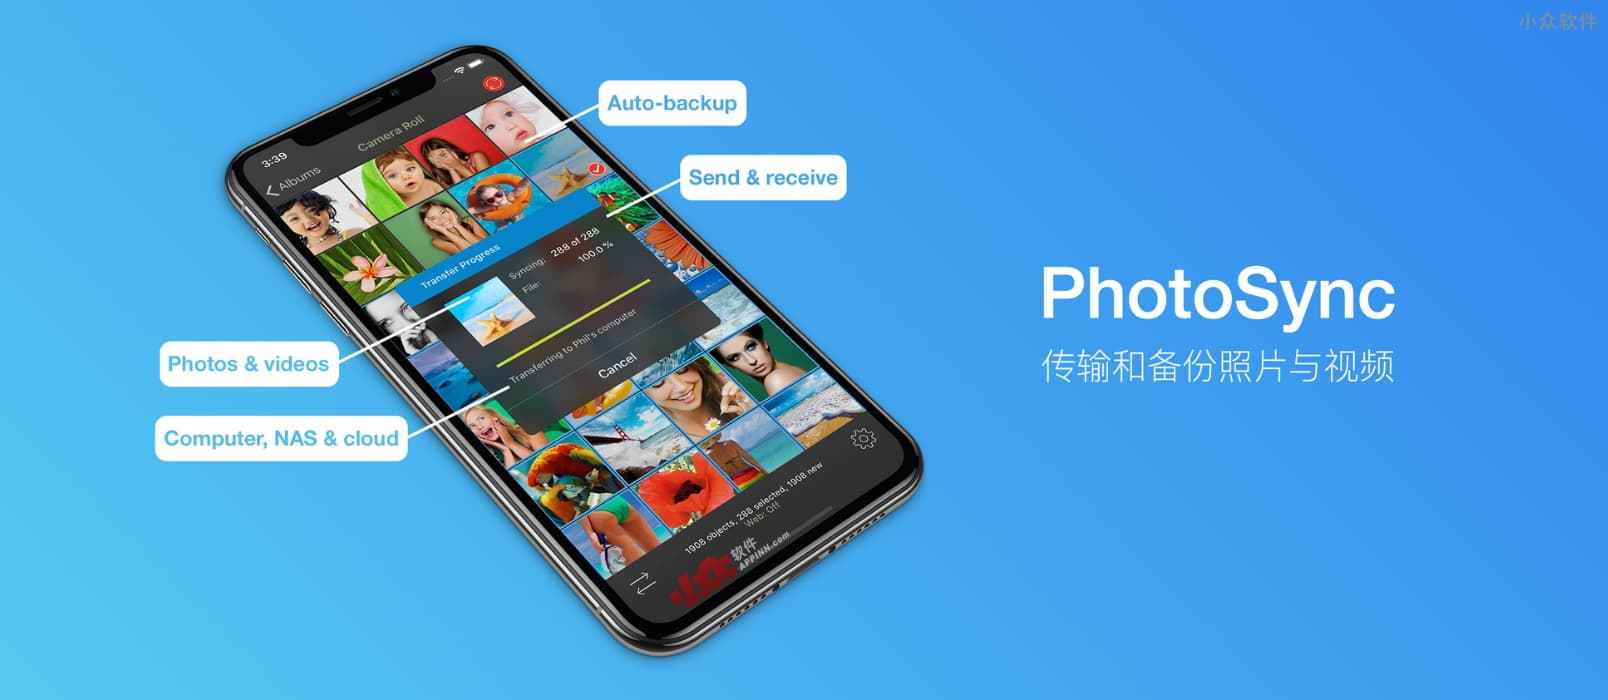 PhotoSync - 可能是 iPhone、Android 最好的图片视频备份软件